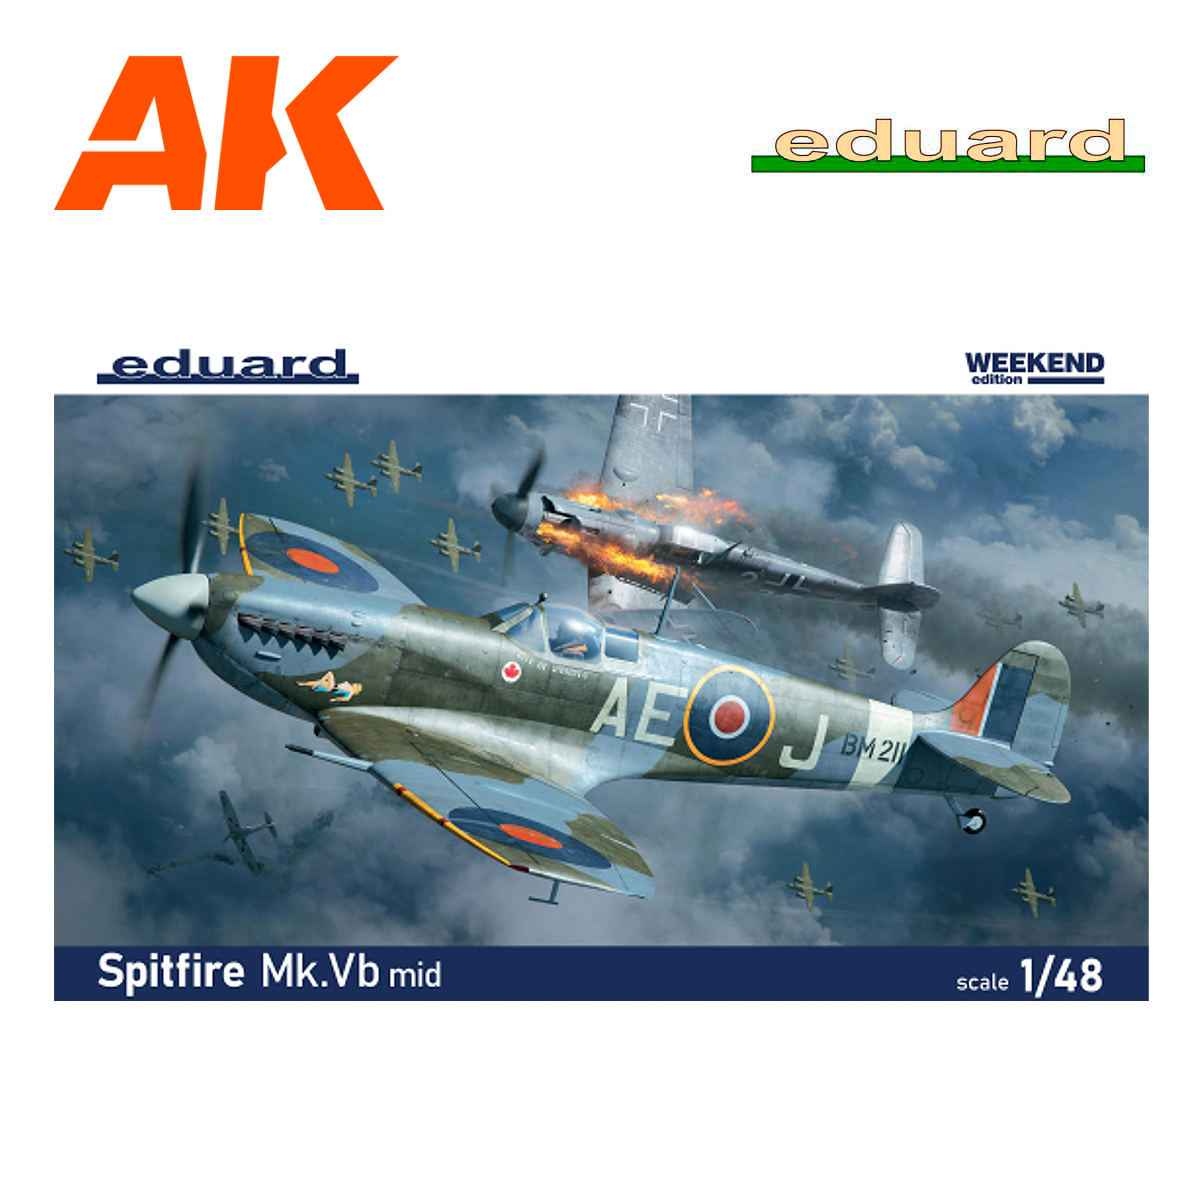 Spitfire Mk.Vb mid 1/48